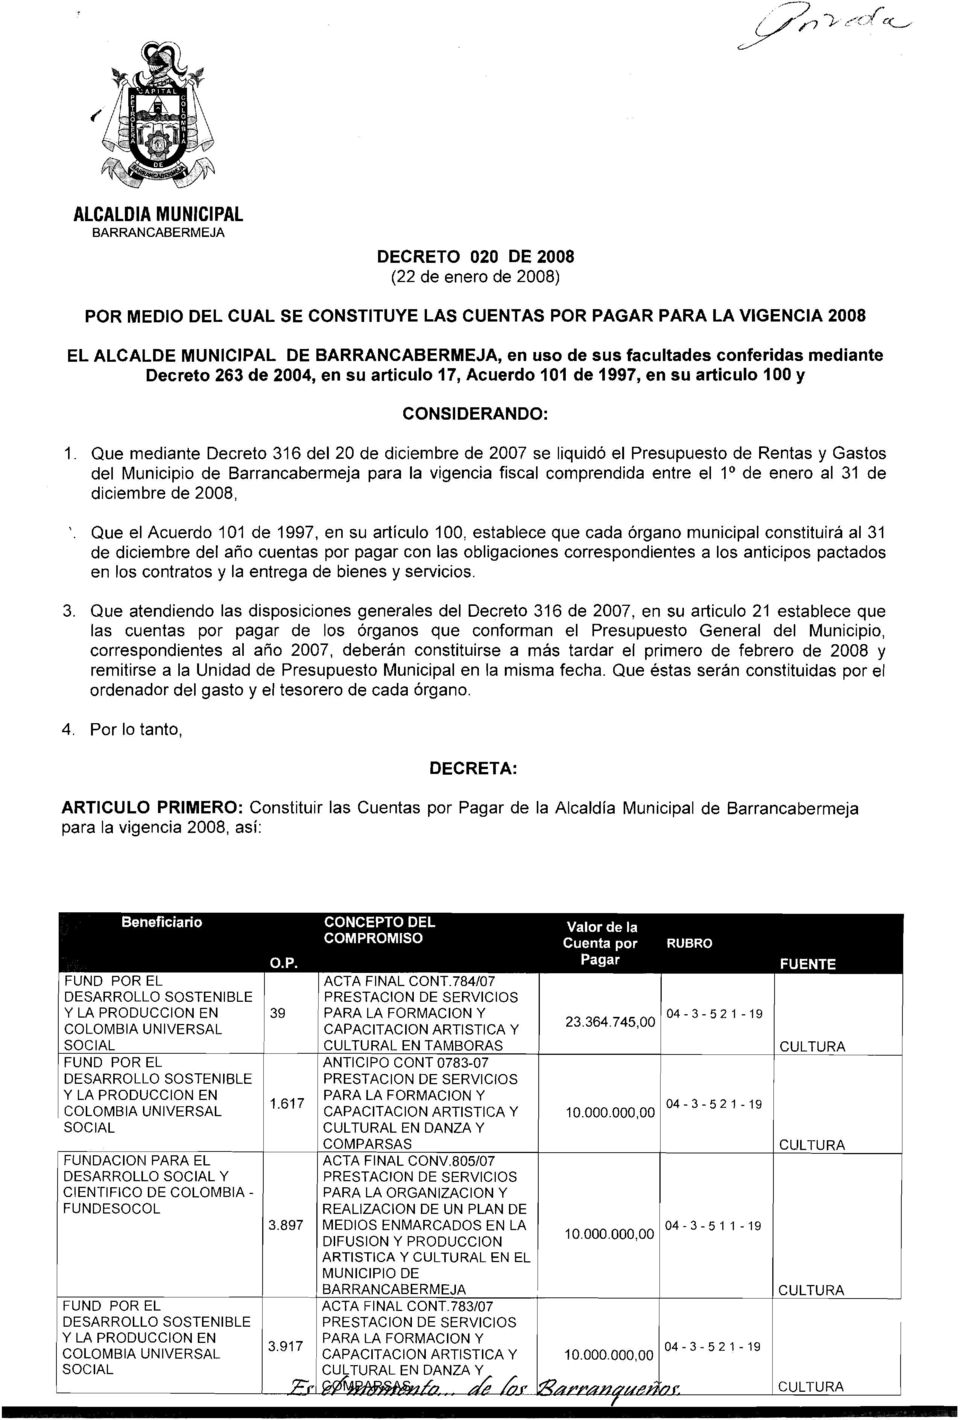 Que mediante Decreto 316 del 20 de diciembre de 2007 se liquid6 el Presupuesto de Rentas y Gastos del Municipio de Barrancabermeja para la vigencia fiscal comprendida entre el lo de enero al 31 de